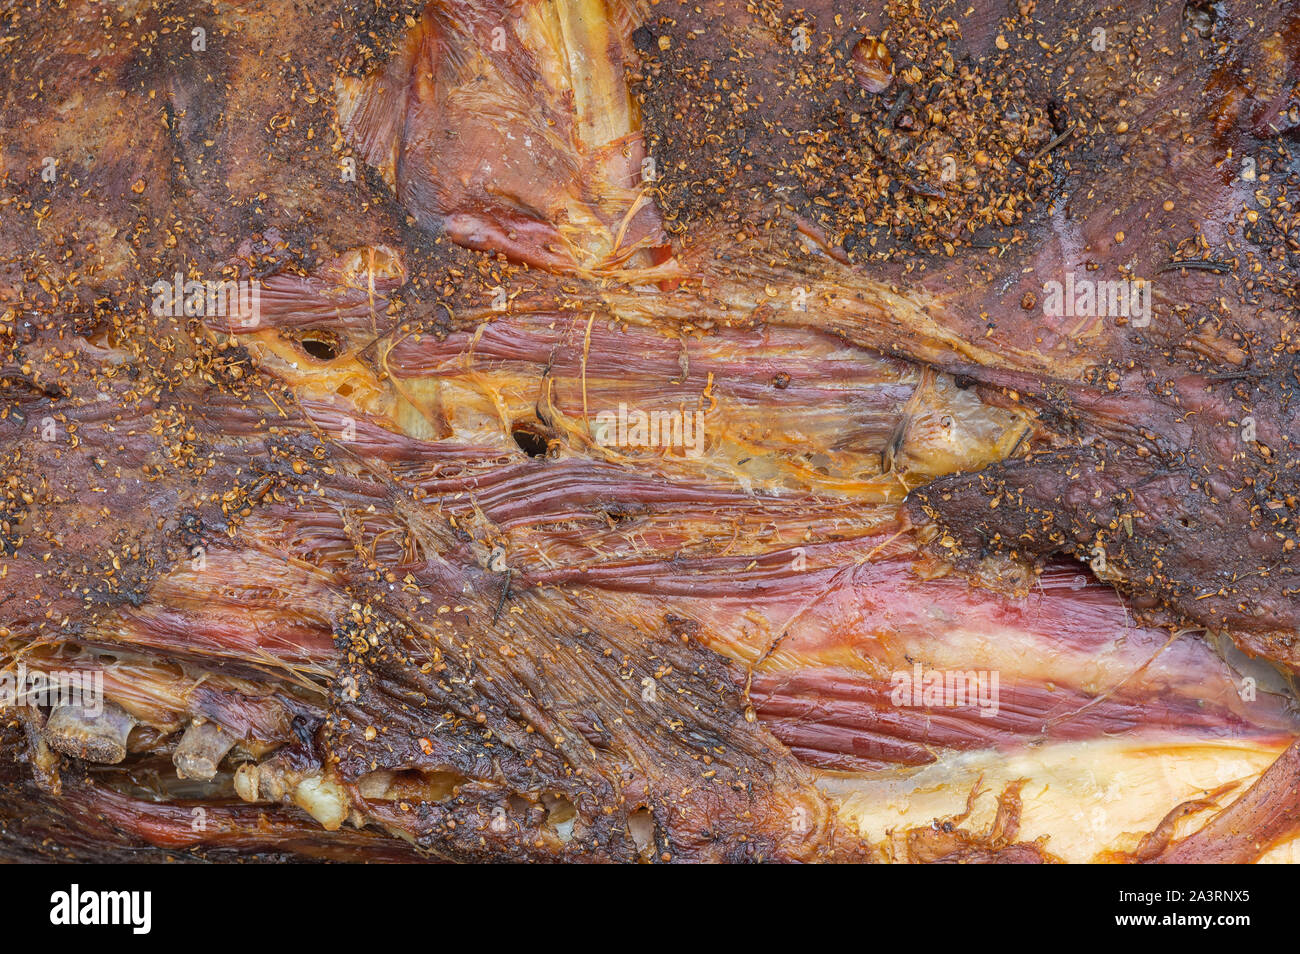 Essen Hintergrund - getrocknete Aas Kuh (Rindfleisch) close-up Stockfoto